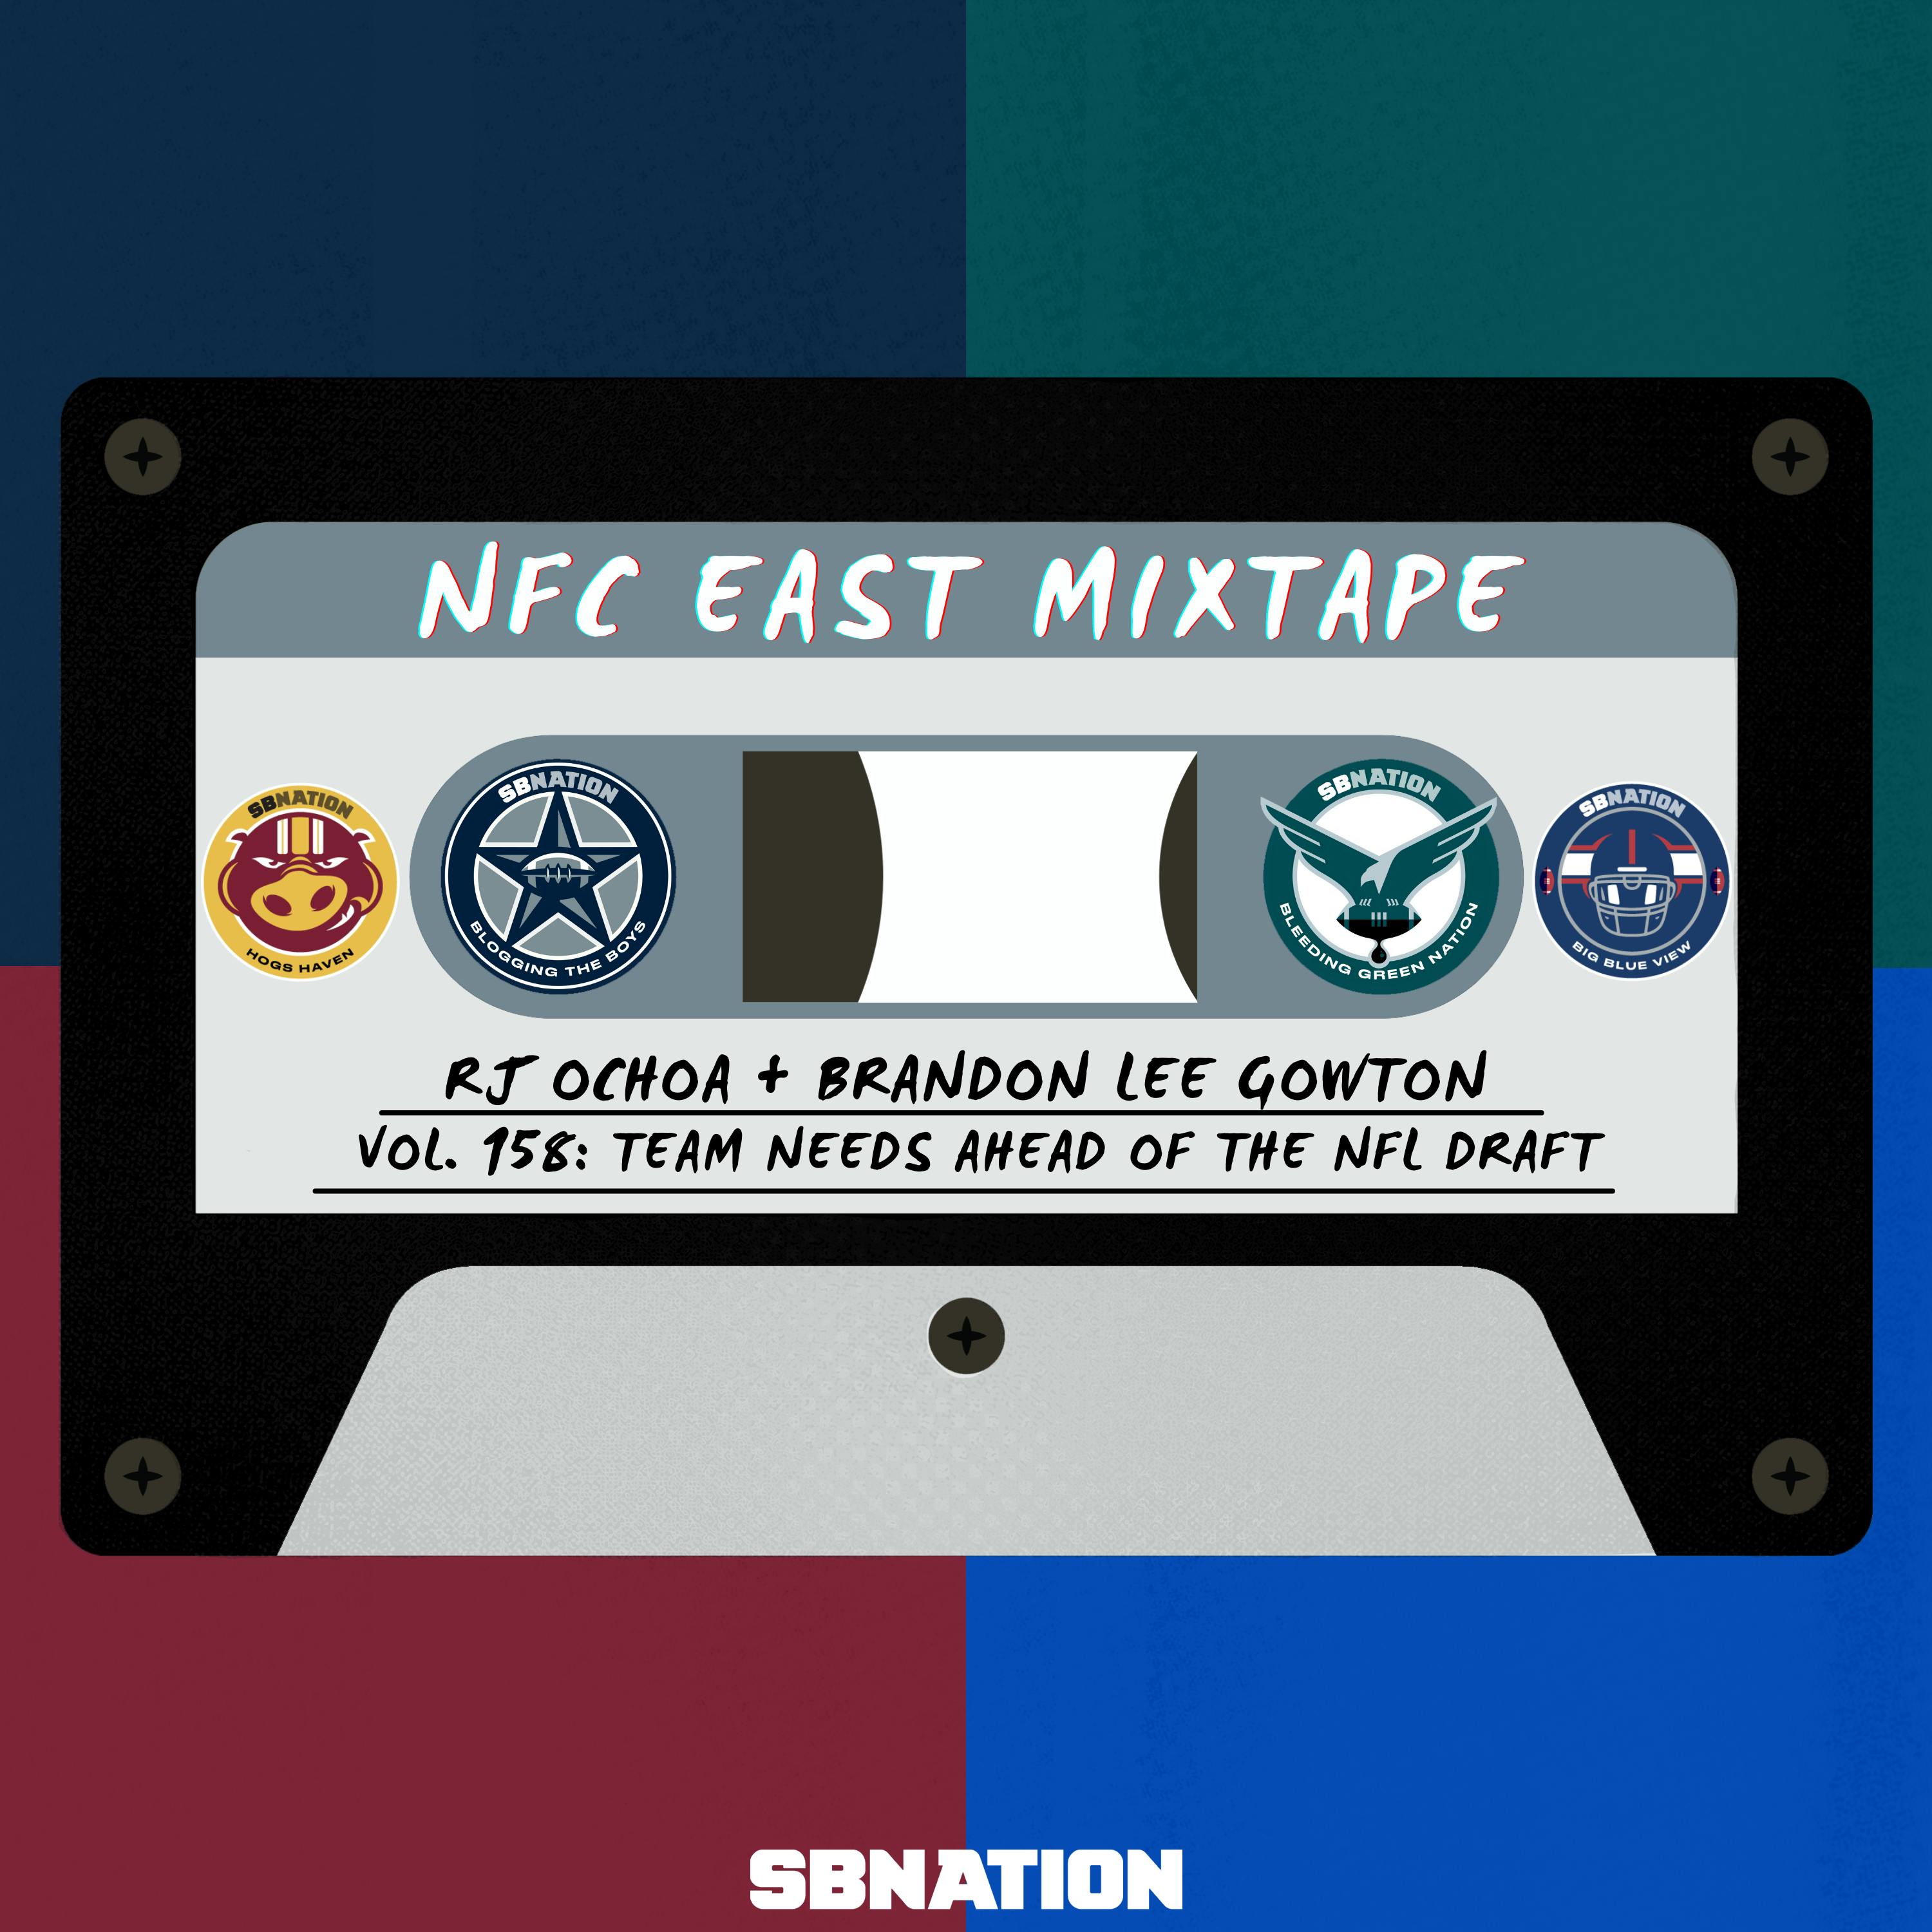 NFC East Mixtape Vol.158: Team needs ahead of the NFL Draft